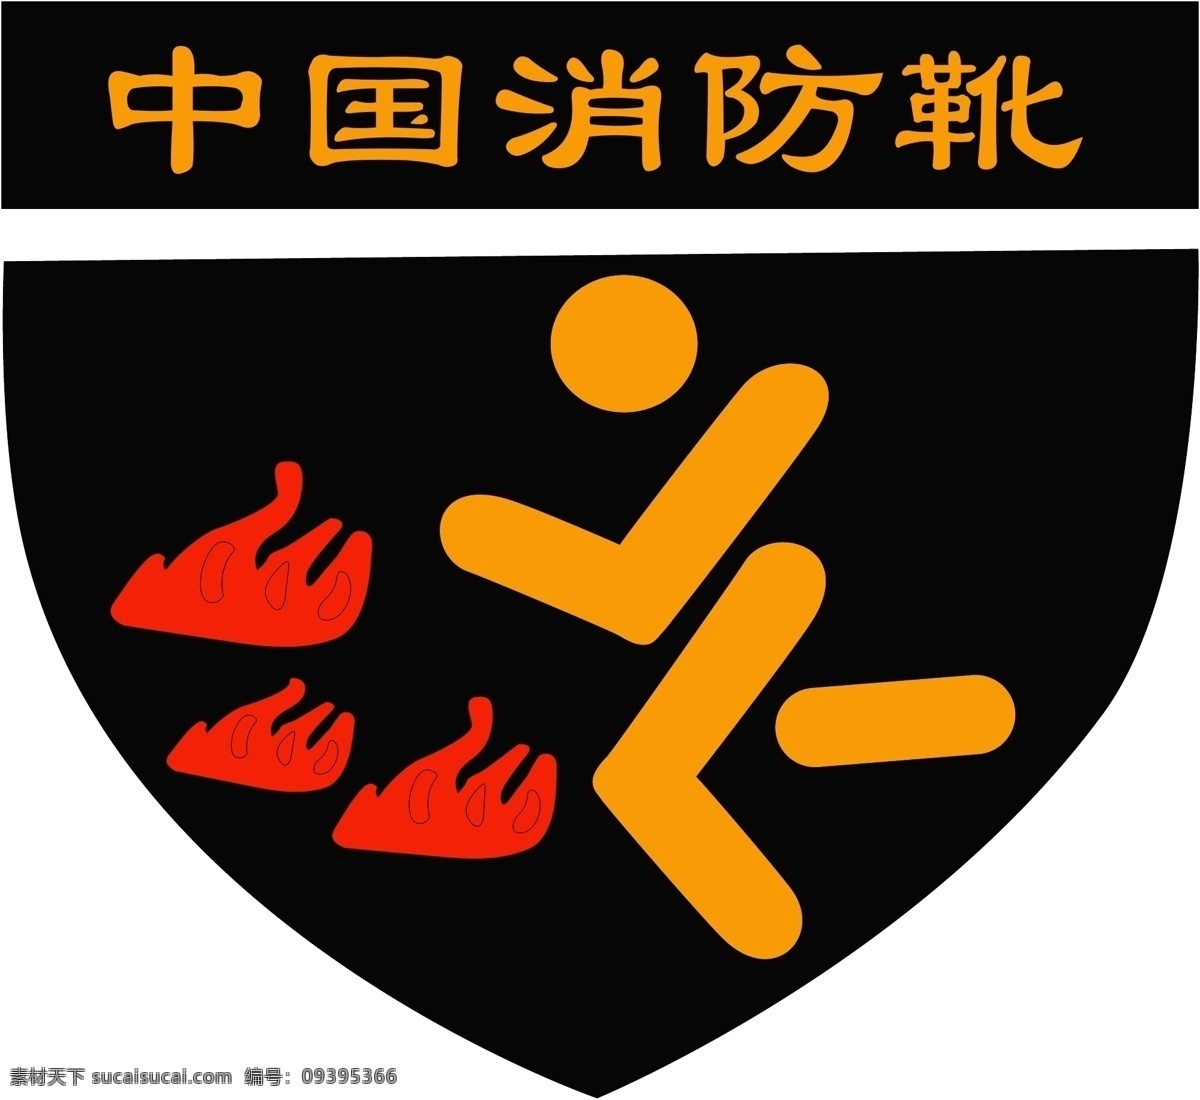 中国 消防 靴 logo 图案 标识标志图标 企业 标志 消防靴 矢量 psd源文件 logo设计